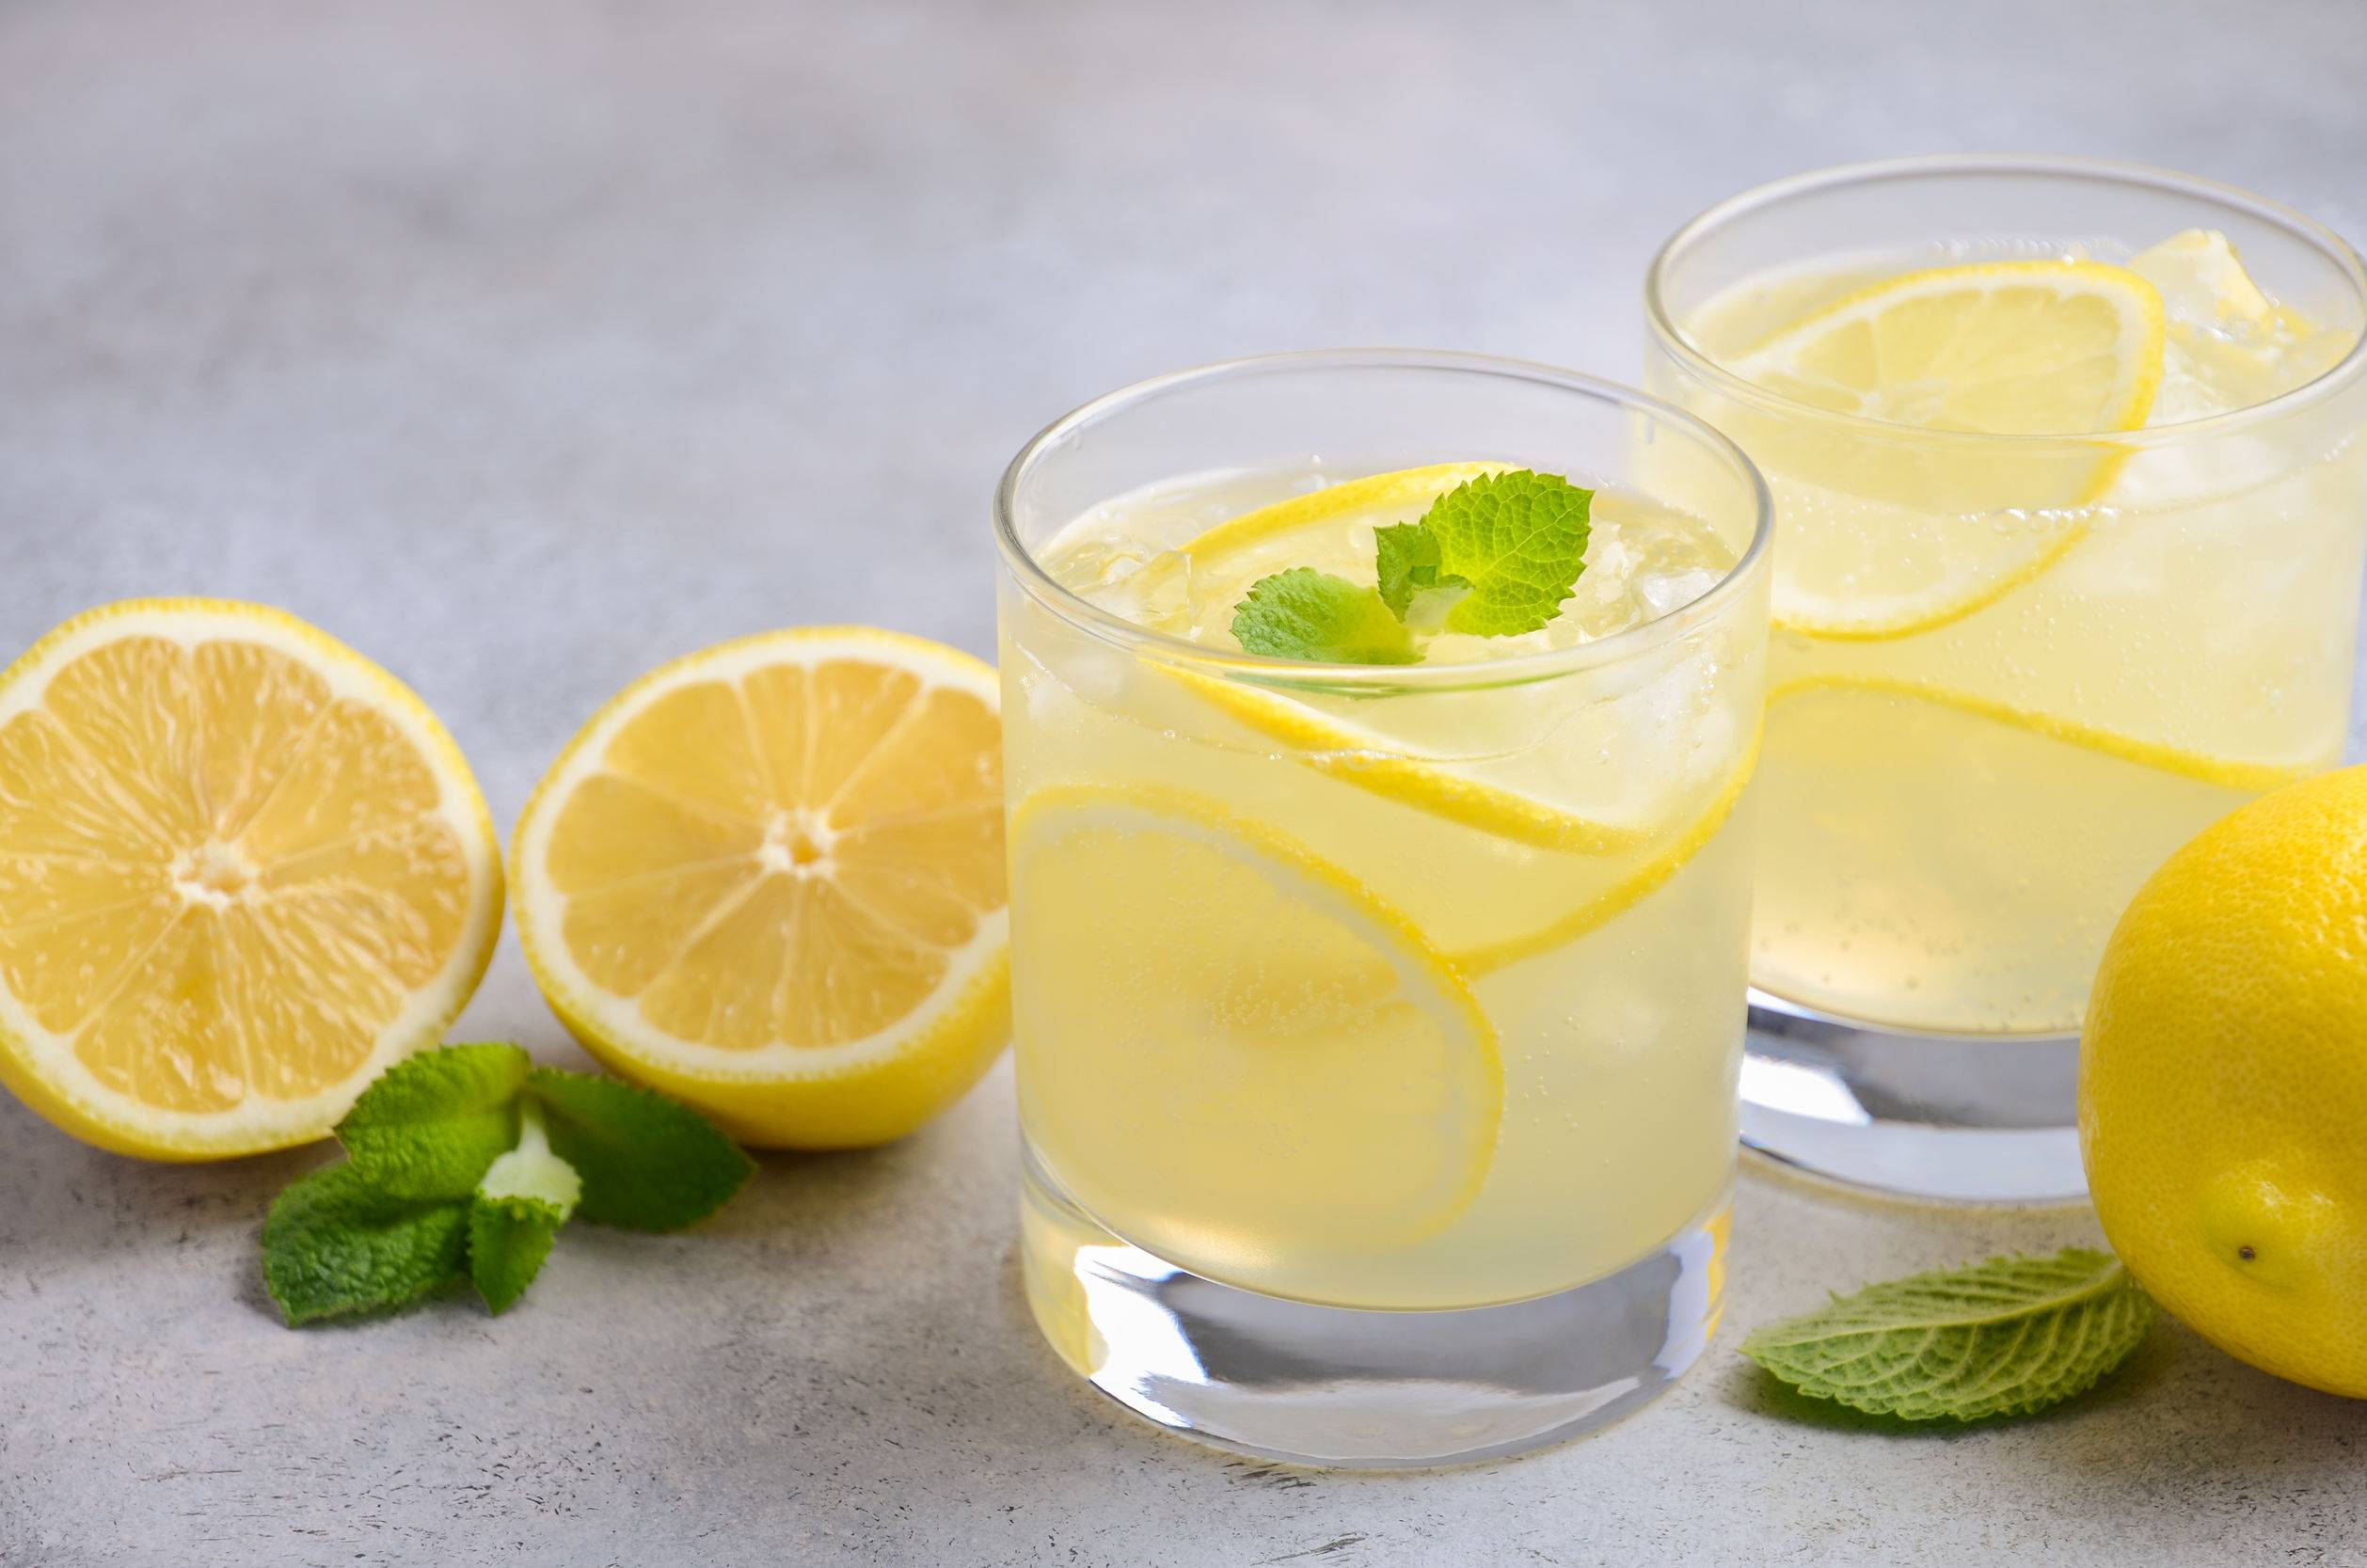 Benarkah Air Lemon Membantu Turunkan Berat Badan? Begini Faktanya